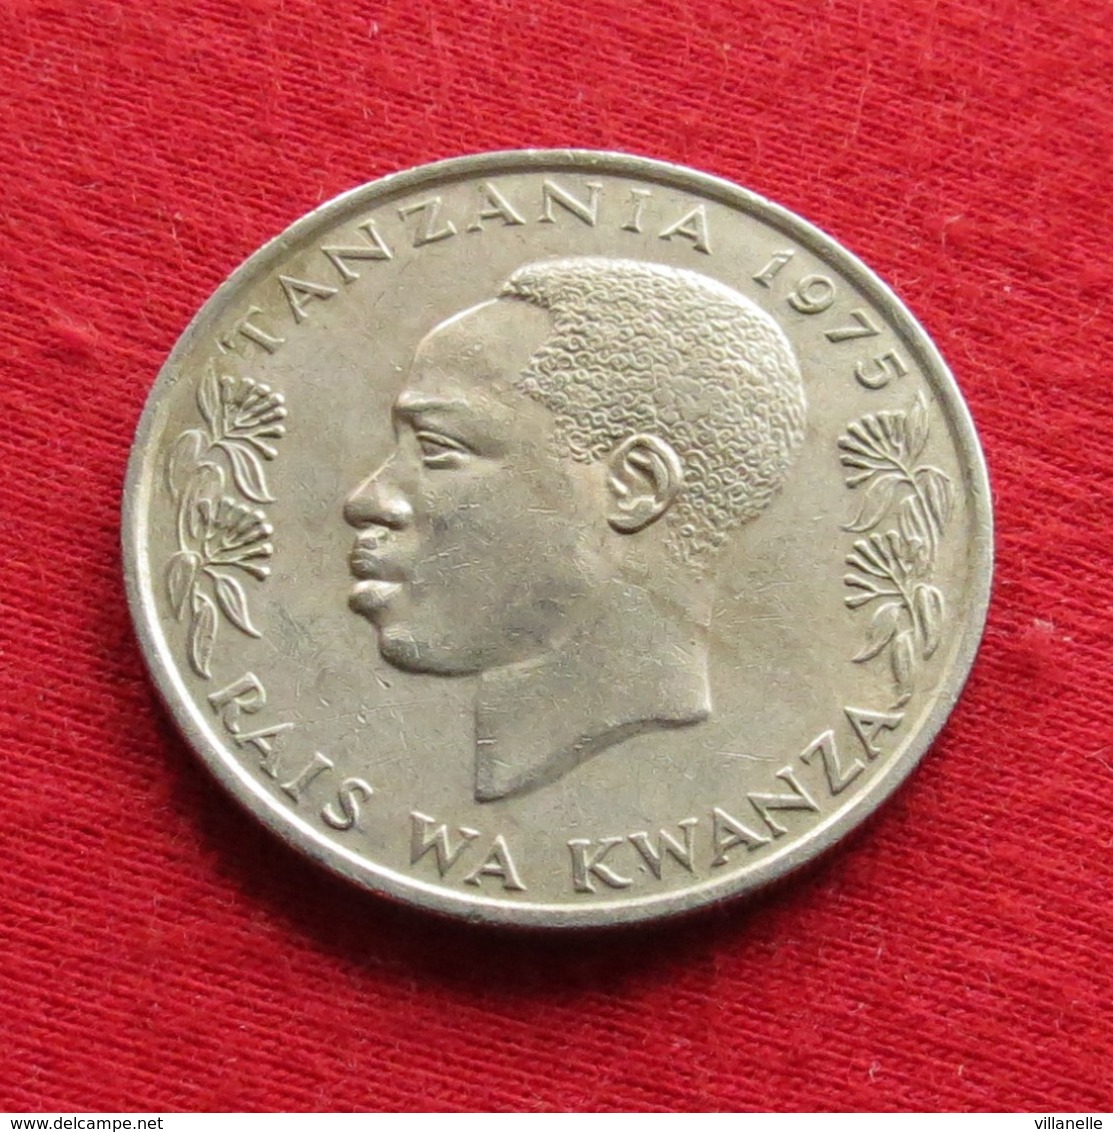 Tanzania 1 Shilingi 1975 KM# 4 Lt 48 *V2T Tanzanie - Tanzanie